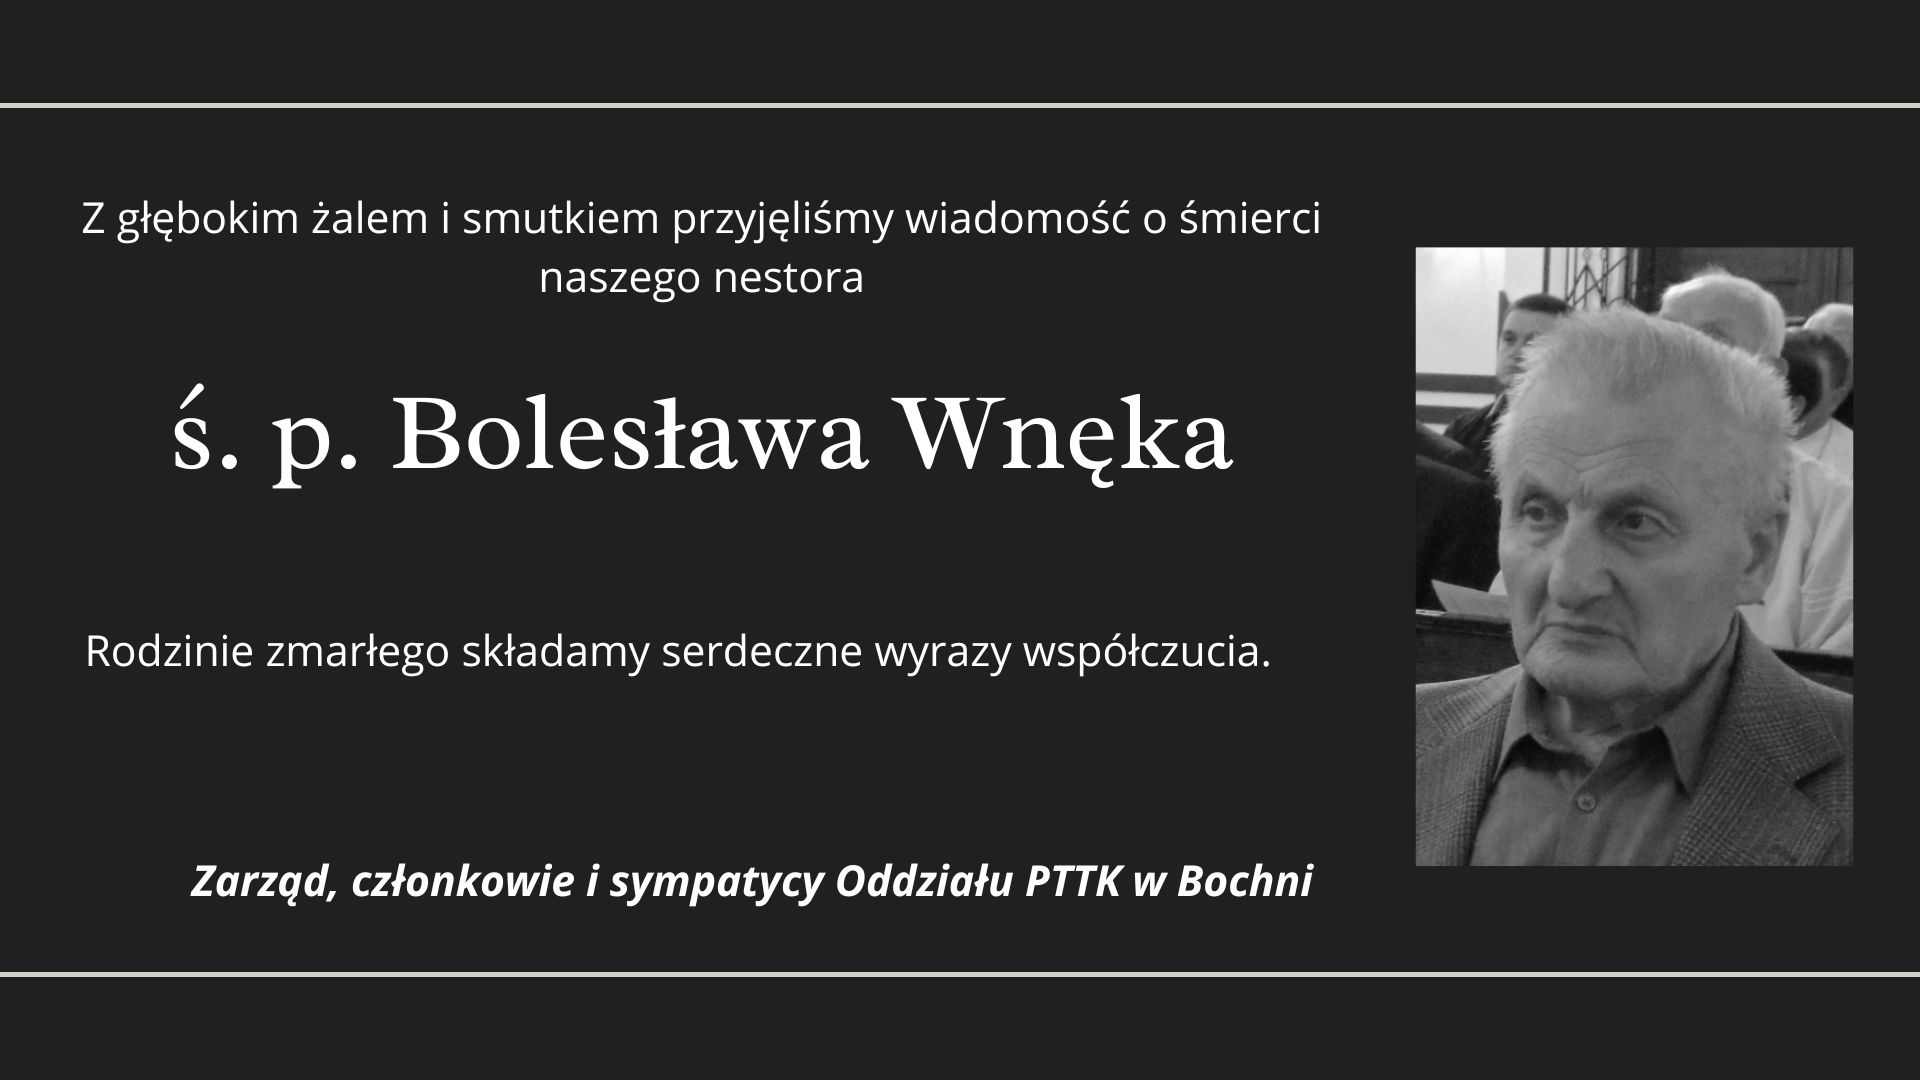 Żegnamy ś. p. Bolesława Wnęka